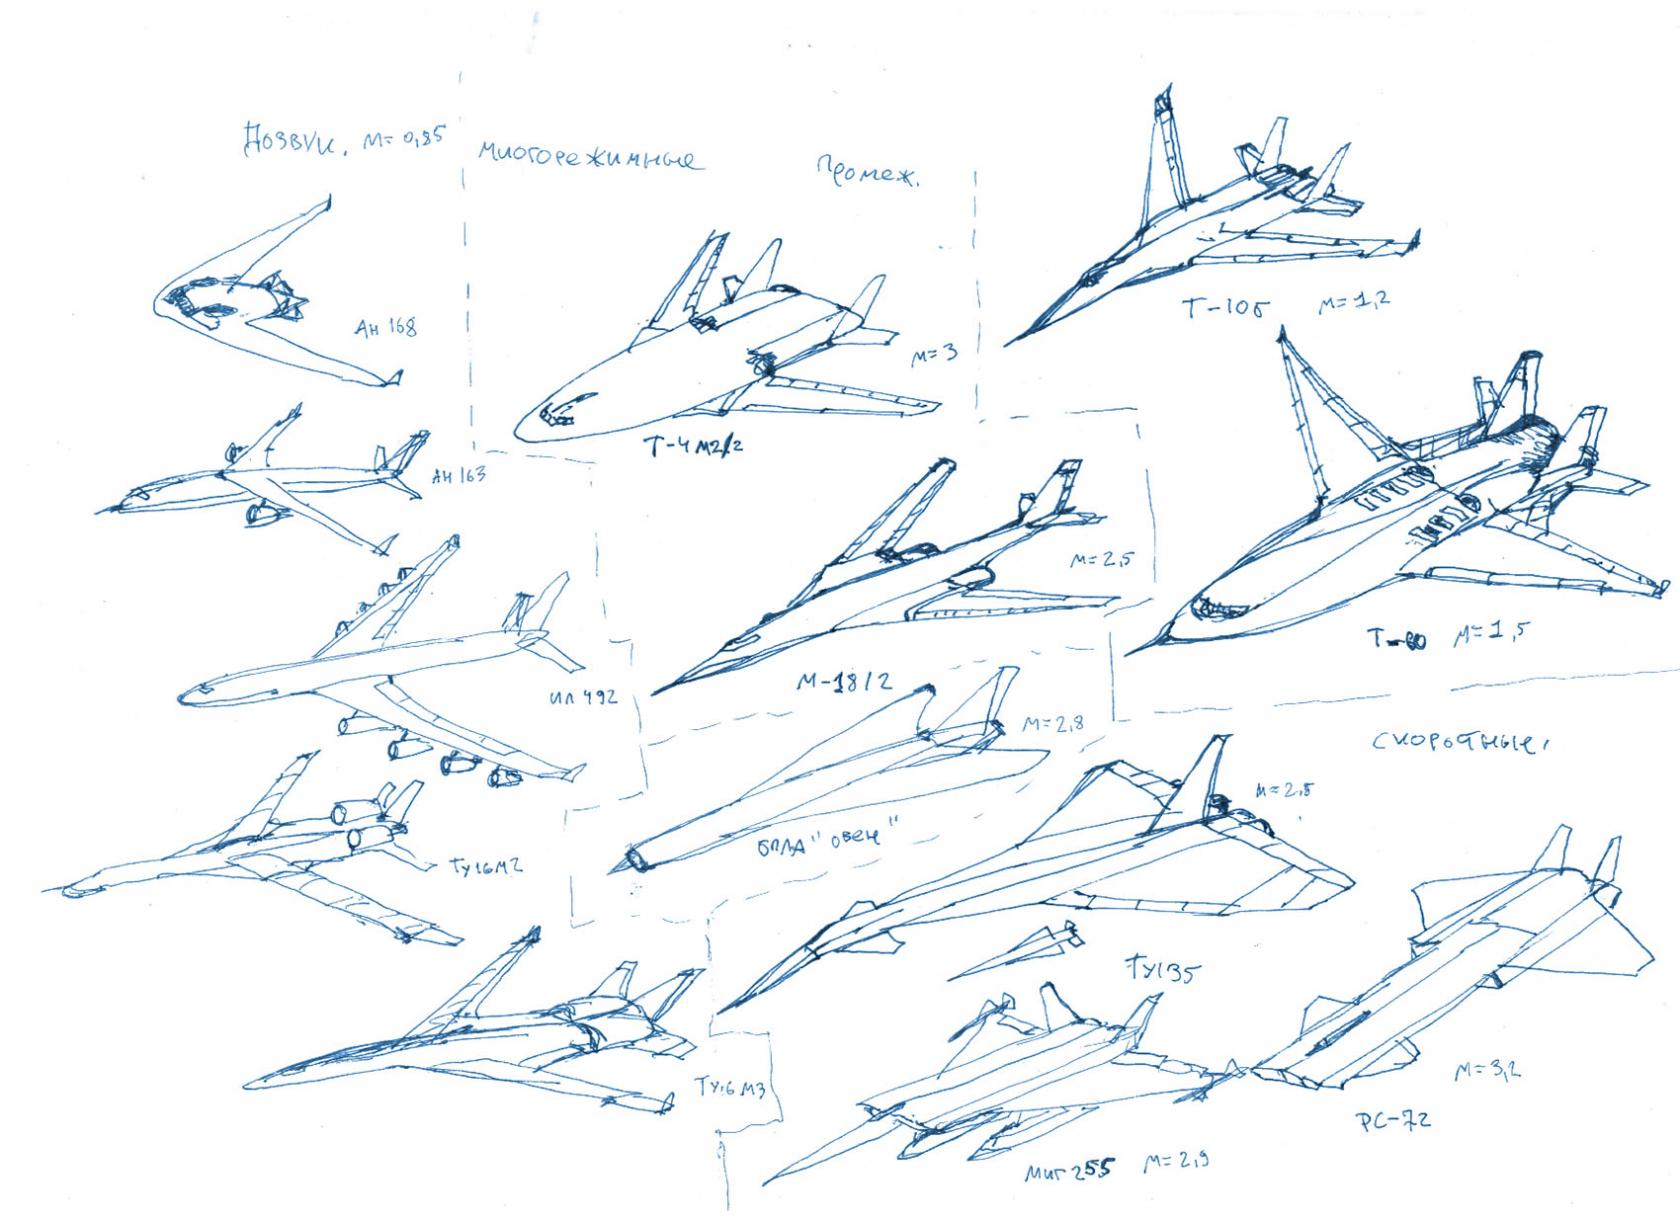 Проекты бомбардировщиков на конкурс 1978 года для ДА ВВС и ВМФ СССР